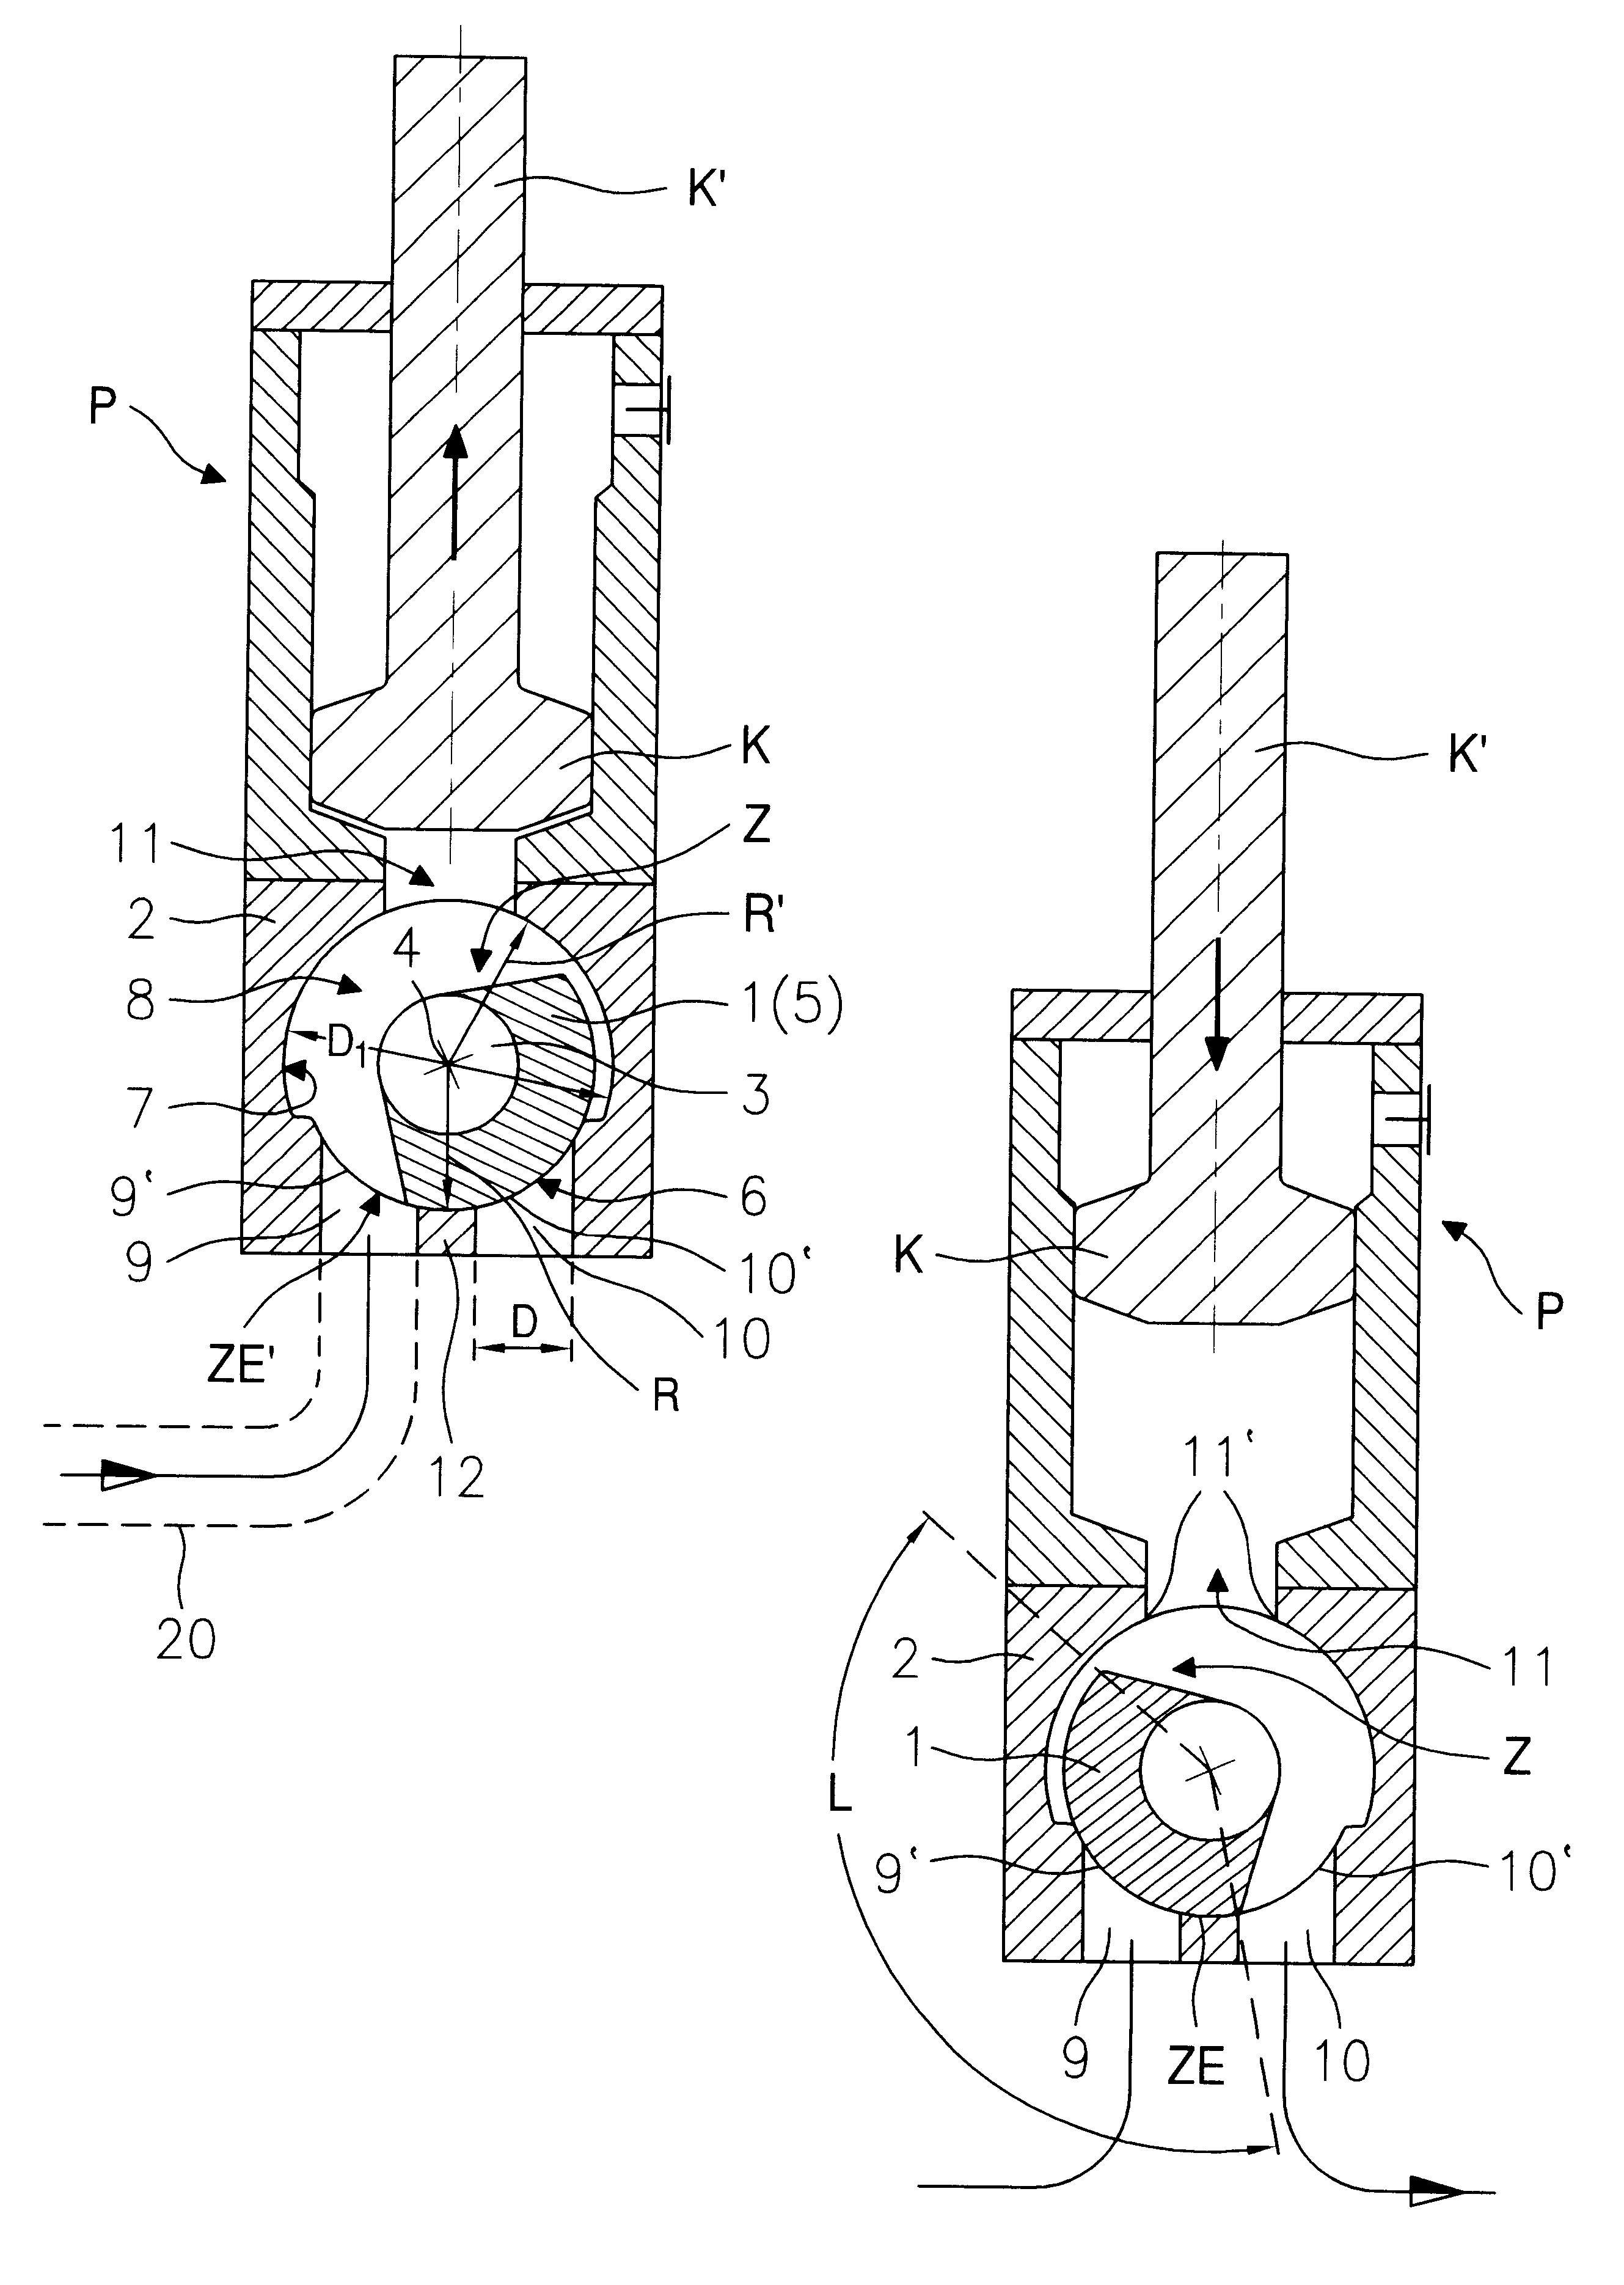 Dispensing valve mounted on dispensing pumps